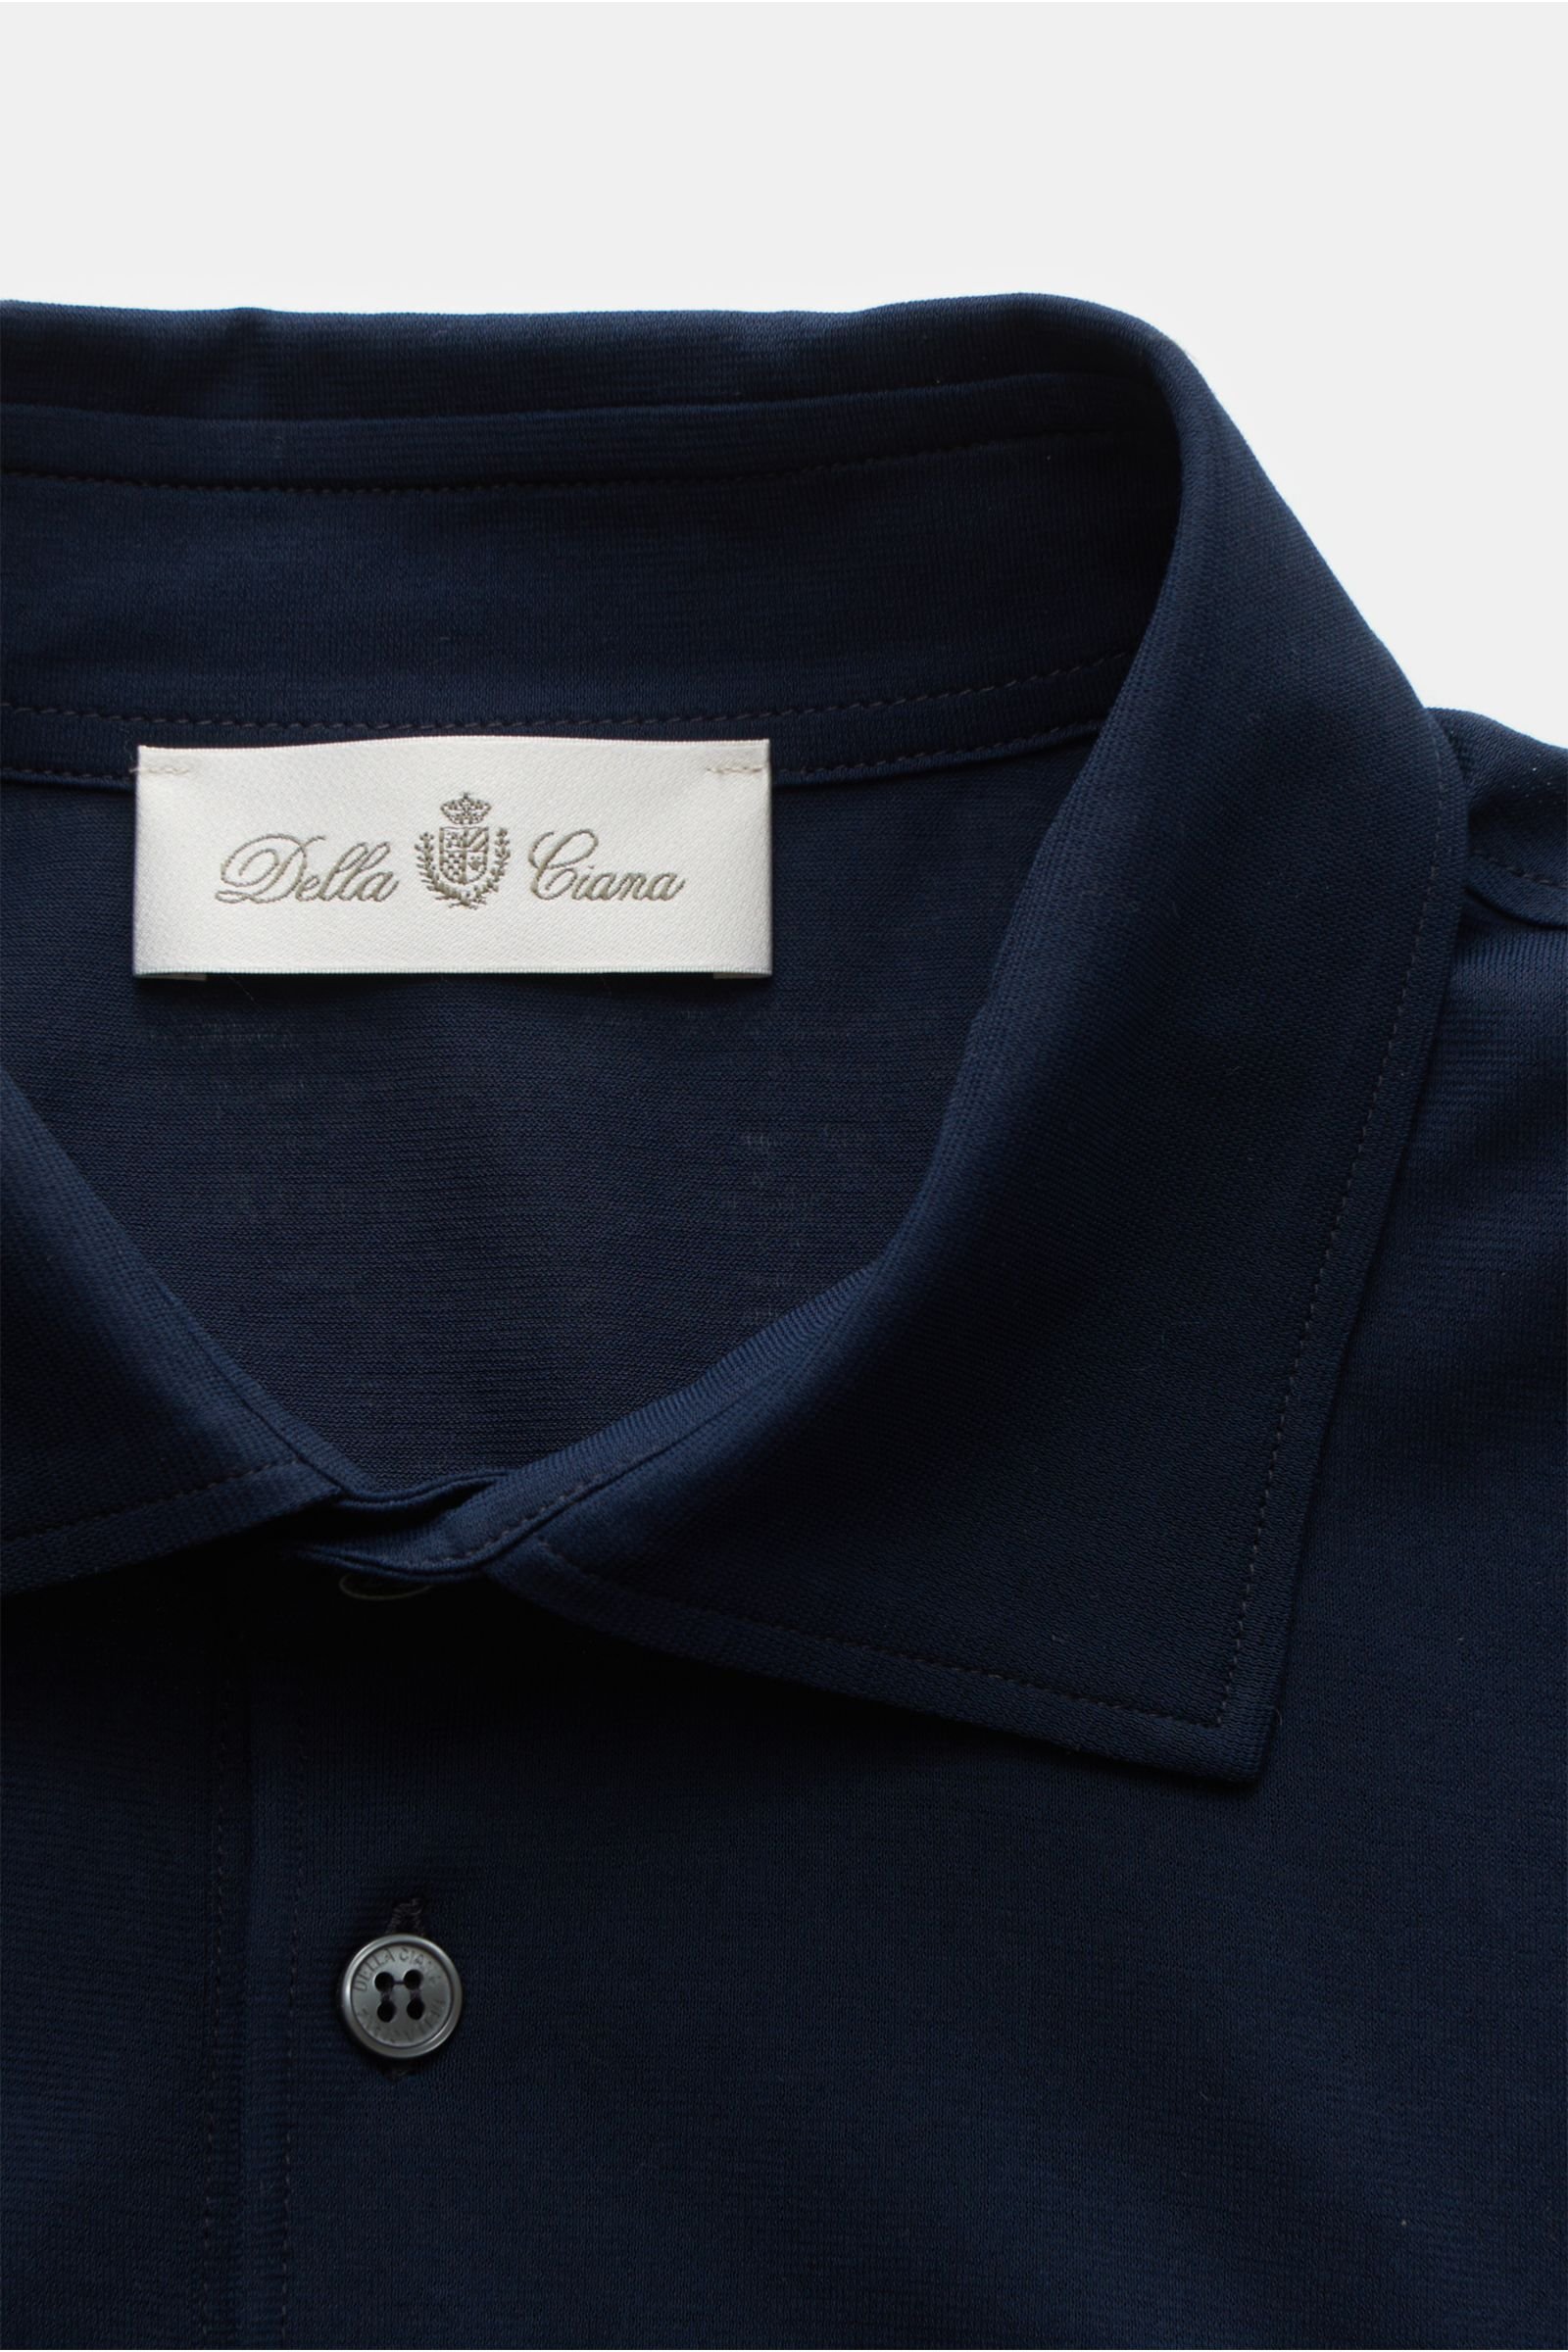 DELLA CIANA long sleeve polo shirt navy | BRAUN Hamburg